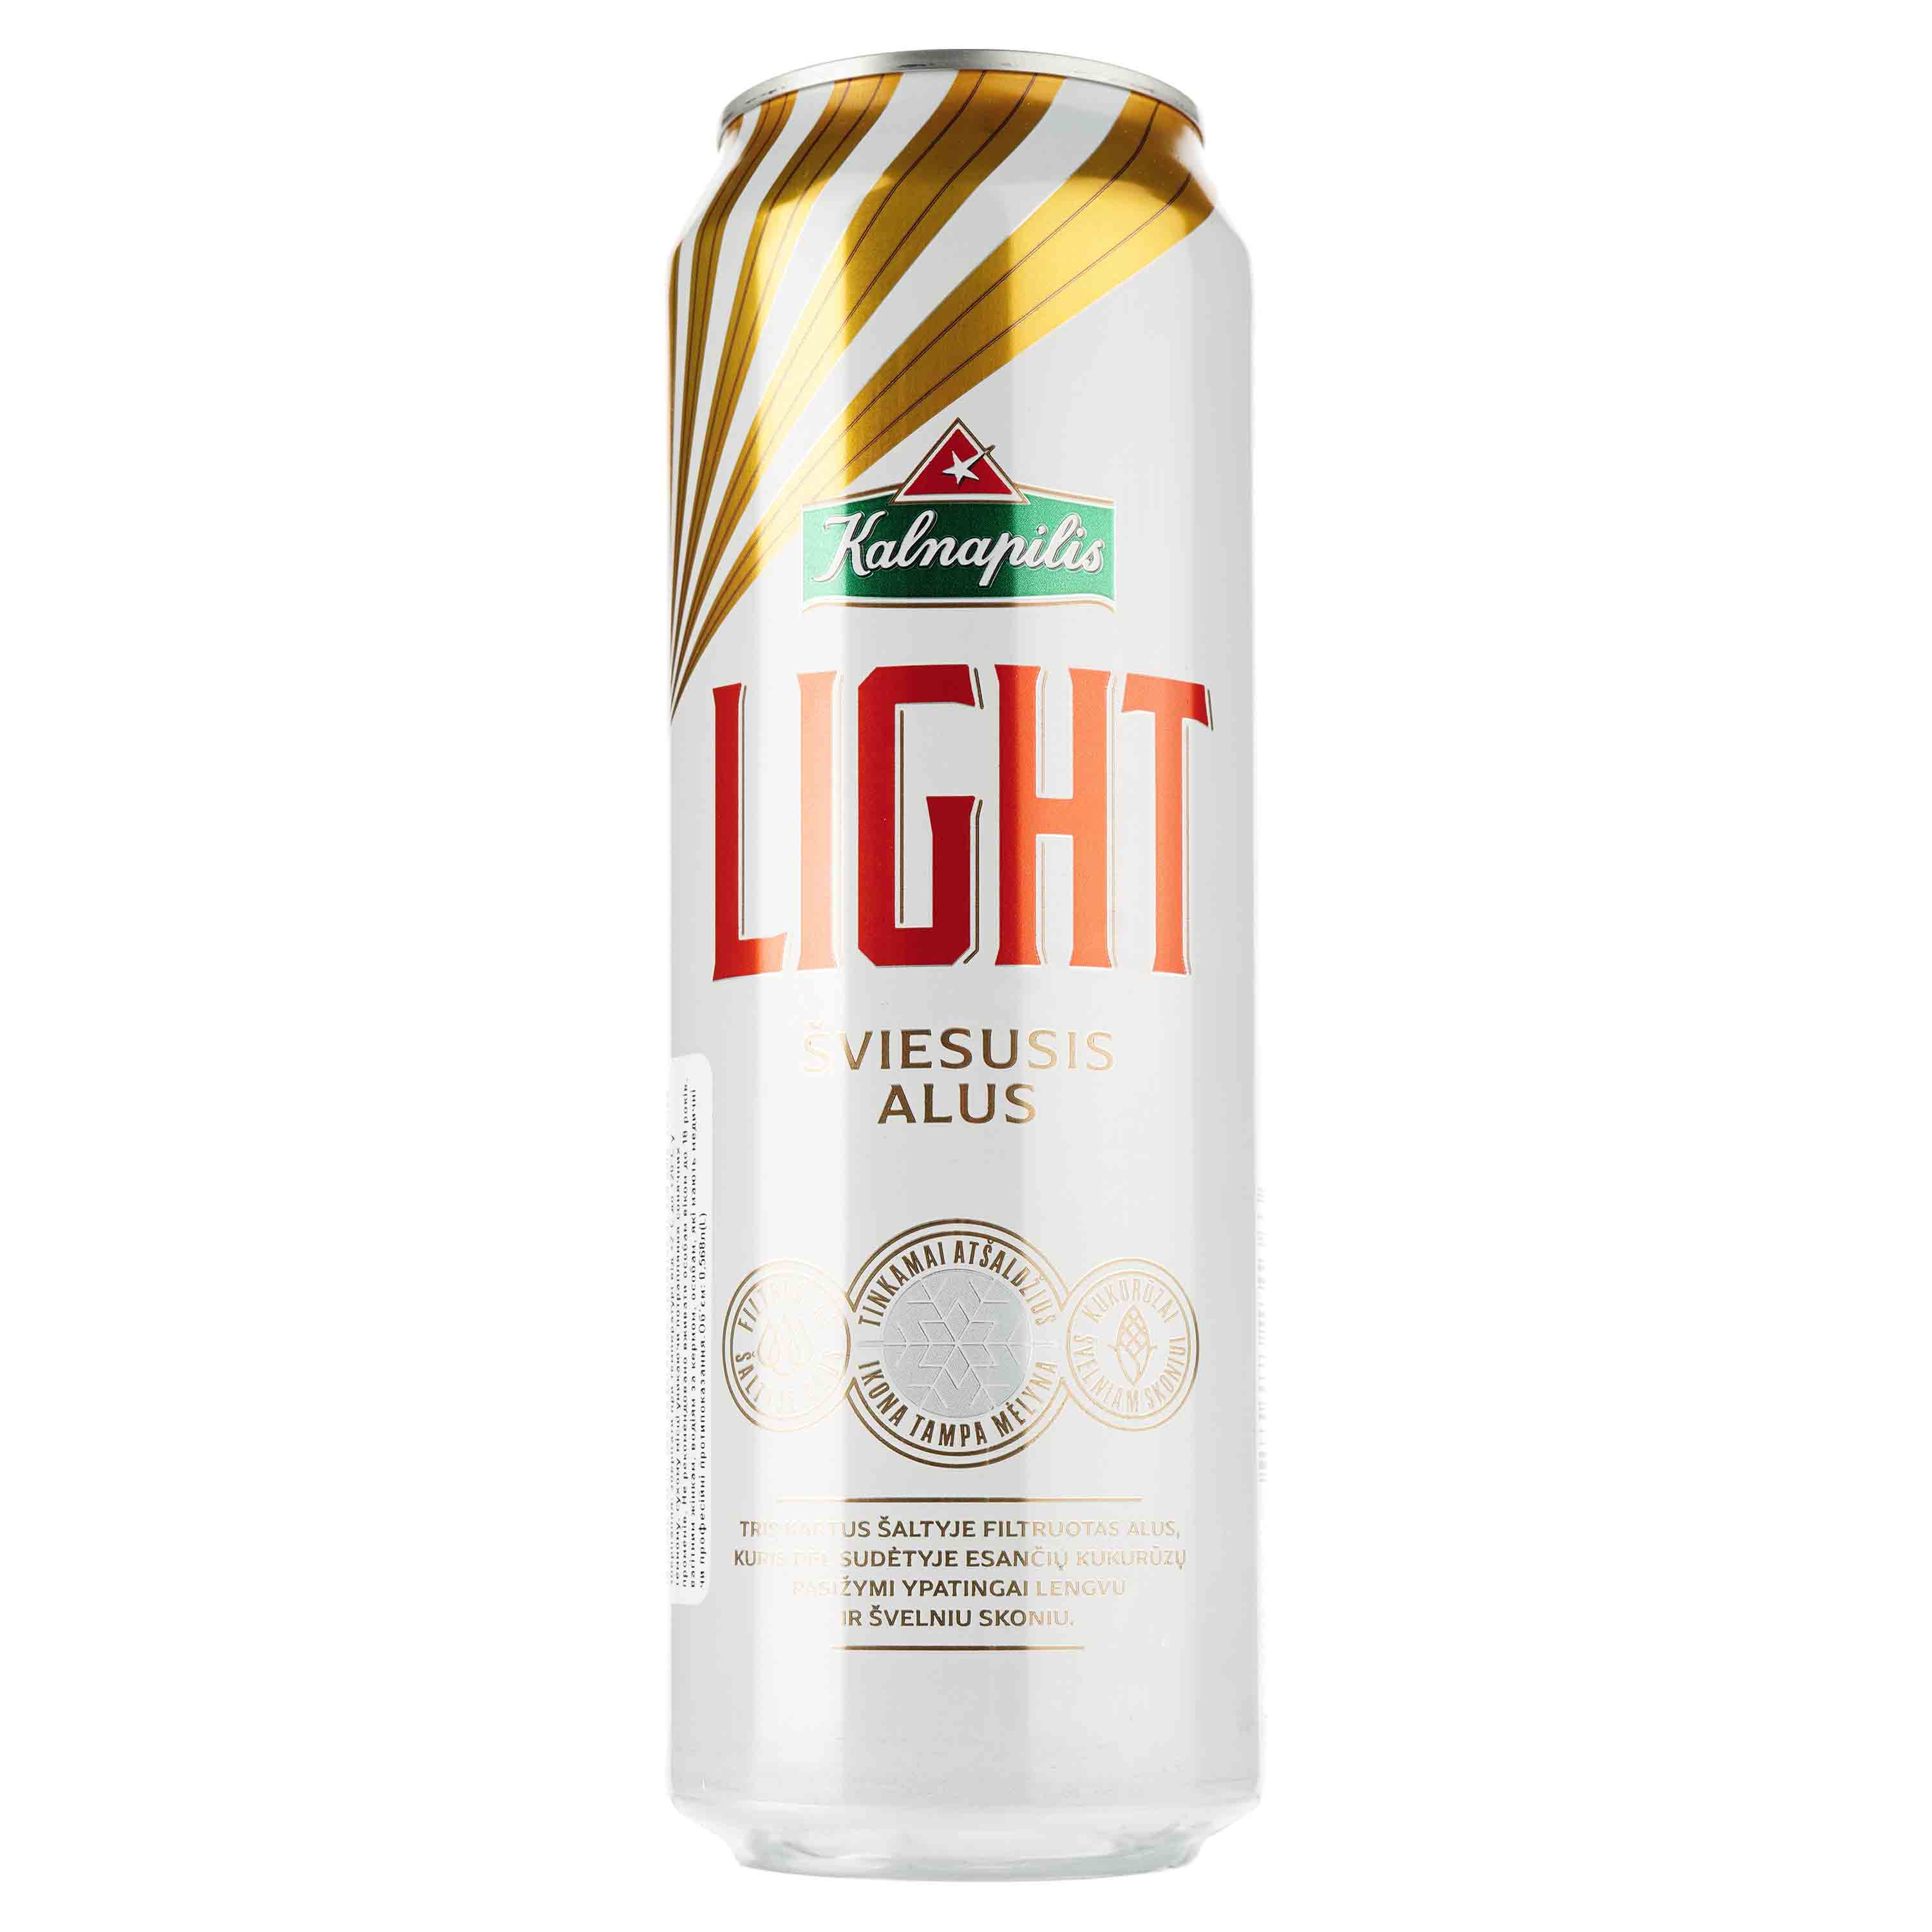 Пиво Kalnapilis Light, светлое, фильтрованное, 4,7%, ж/б, 0,568 л - фото 1